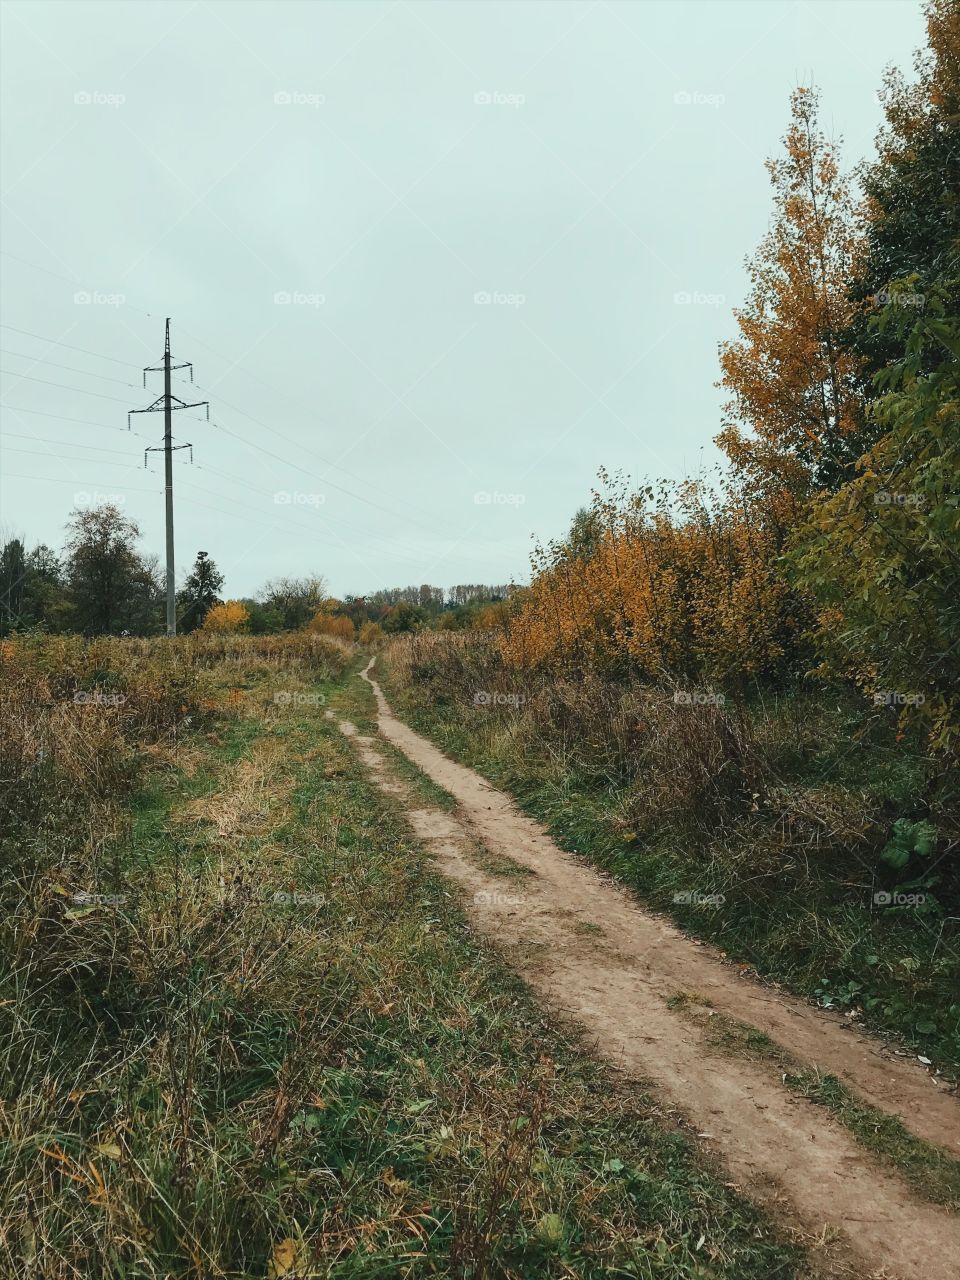 Landscape, Road, Tree, No Person, Nature